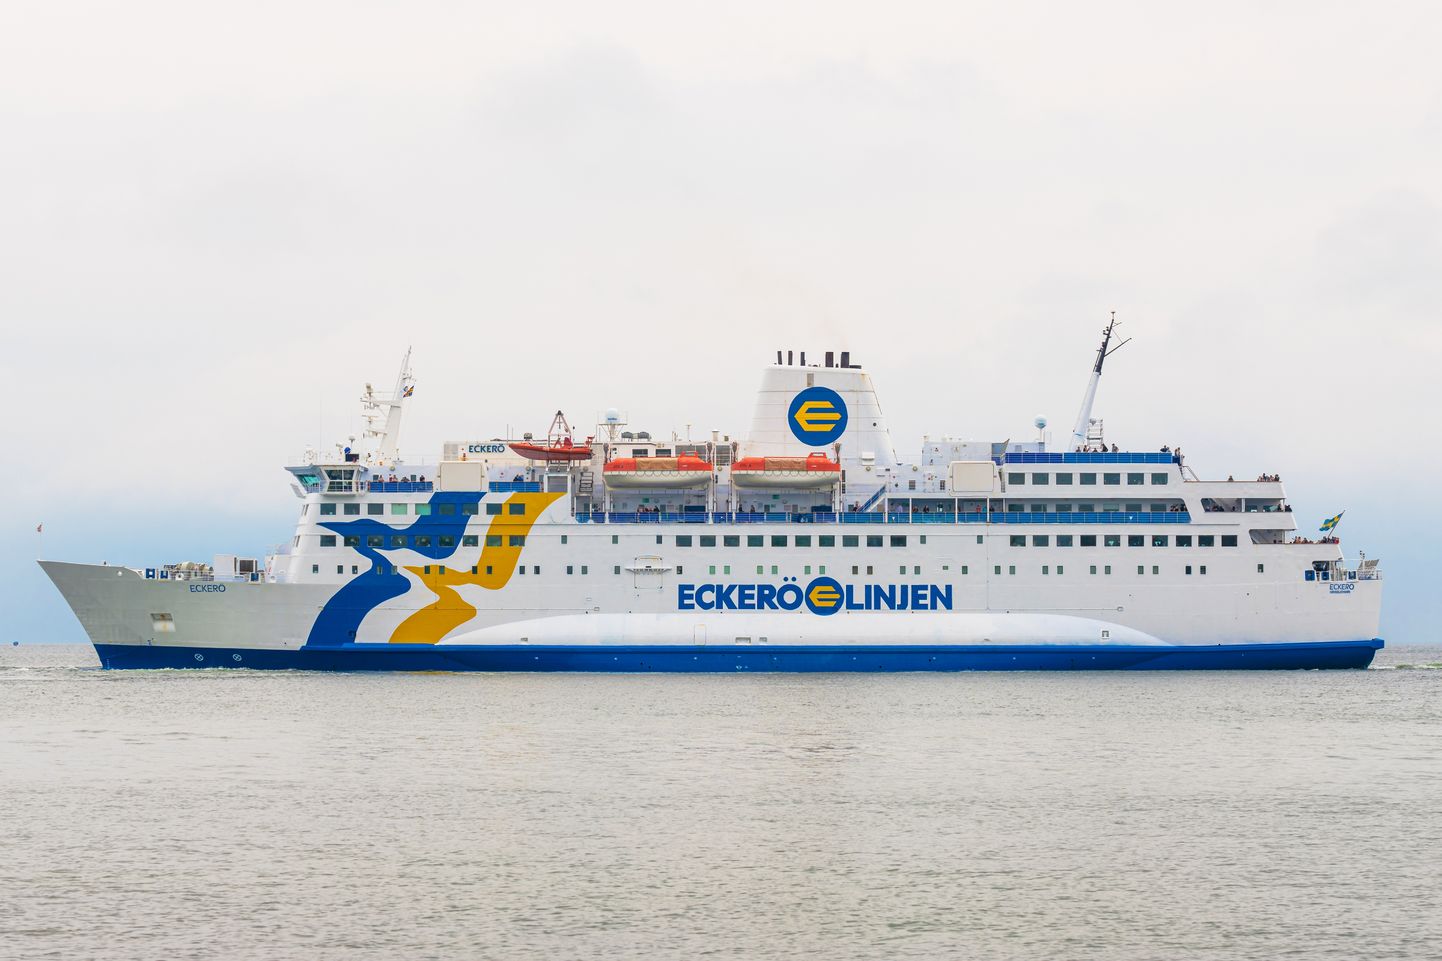 Soome laevafirma Eckerö Linjeni parvlaev Eckerö juunis 2022 Rootsis Grisslehamnist välja sõitmas